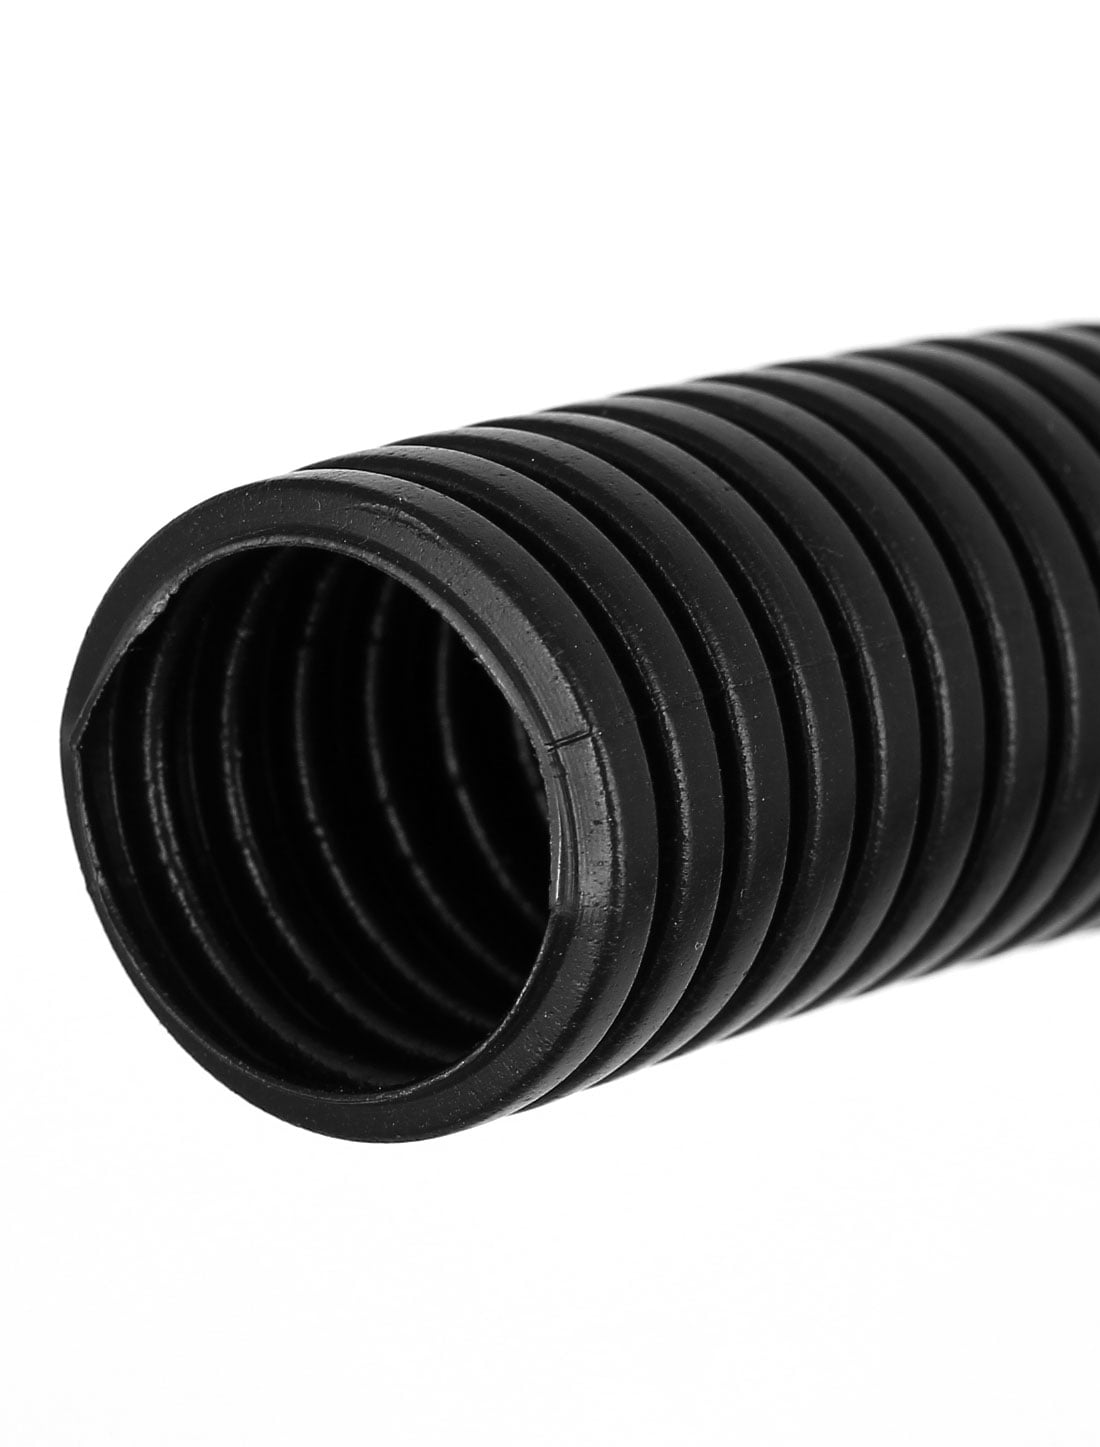 30 mètres de long Tuyau flexible ondulé nervuré noir pour pompe de bassin 12 mm 